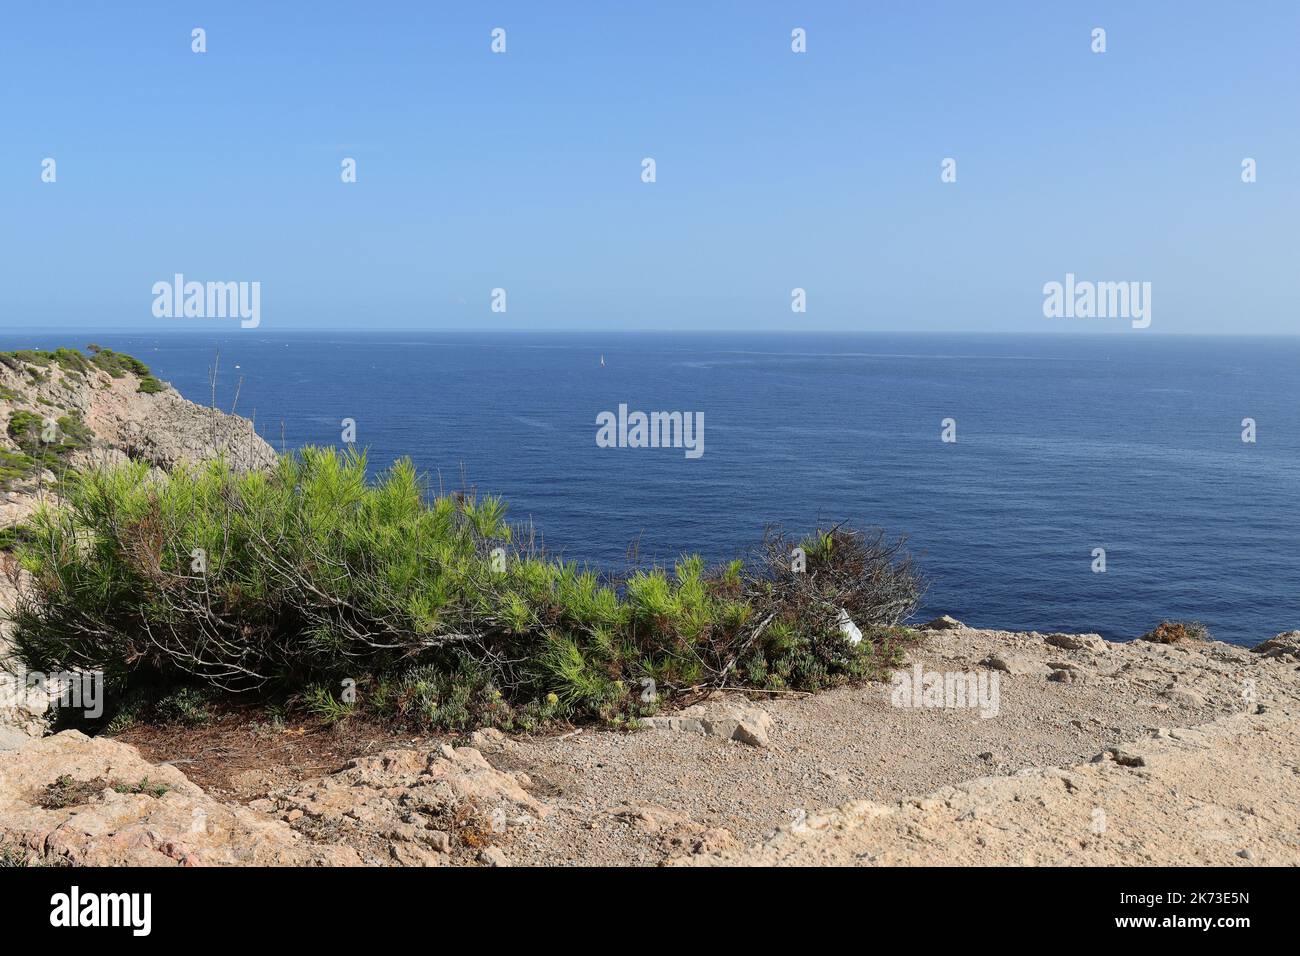 Vue idyllique sur les rochers ensoleillées au-dessus de la mer avec végétation verte en premier plan, Cala Ratjada, Majorque, espace copie Banque D'Images